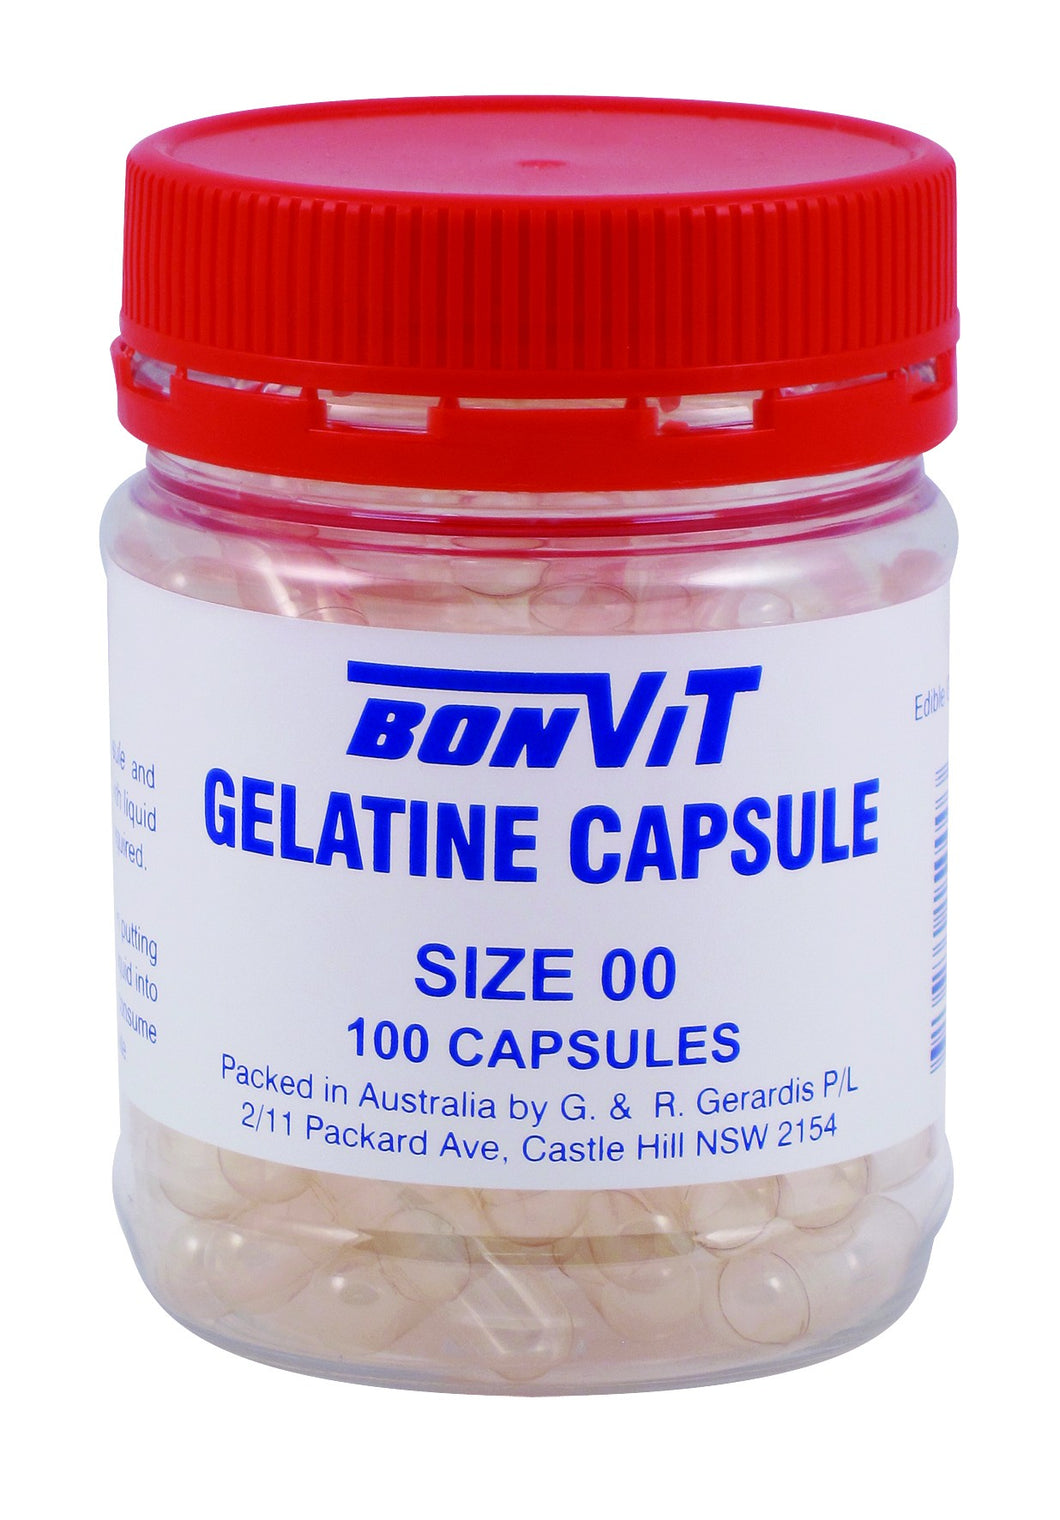 Bonvit, Gelatin Capsules, Size 00, 100 Capsules, Empty